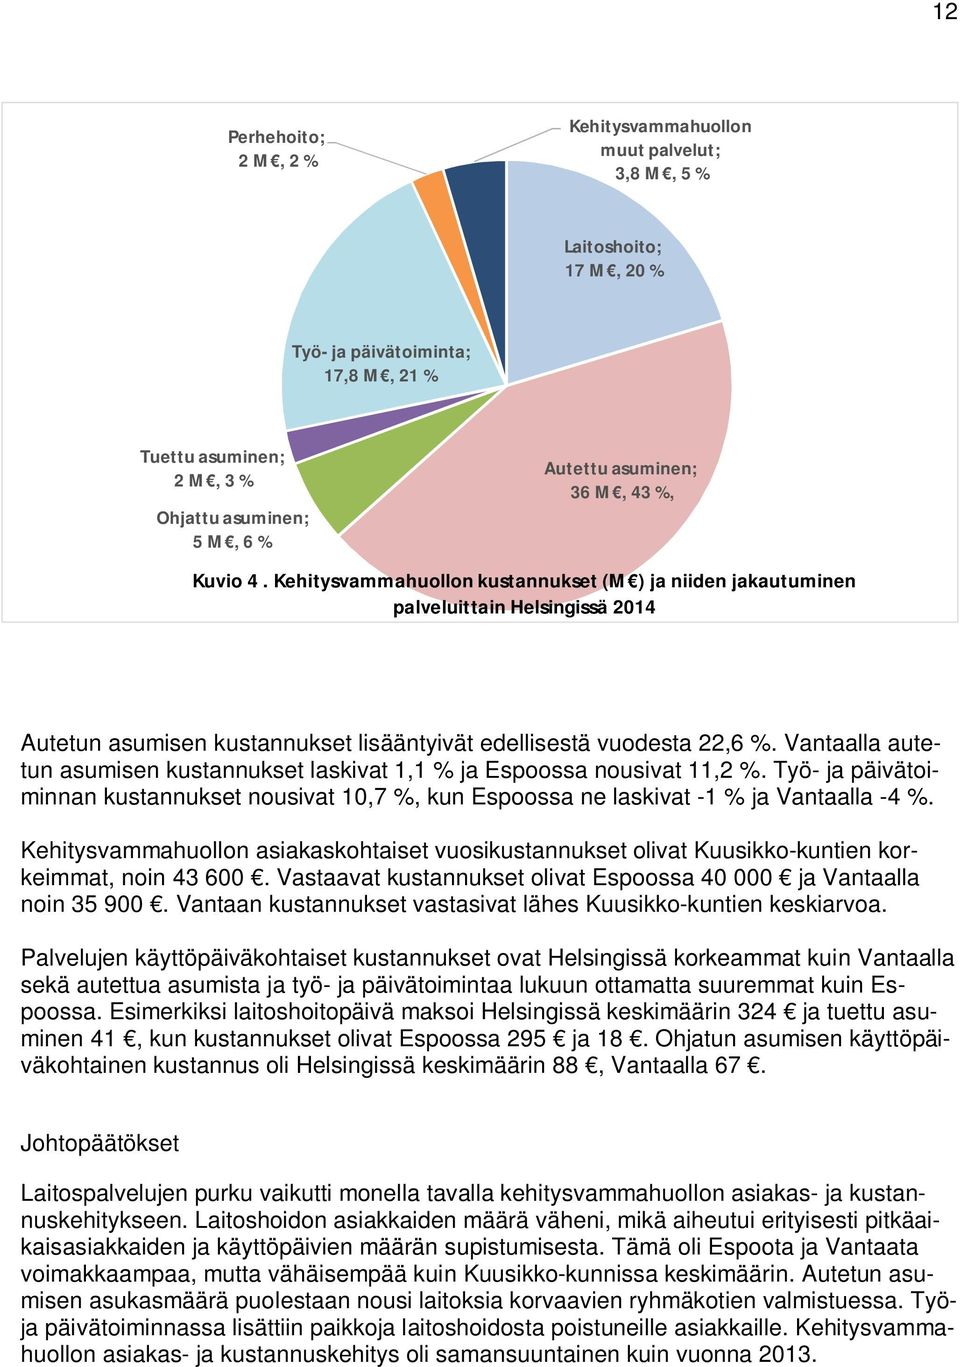 Vantaalla autetun asumisen kustannukset laskivat 1,1 % ja Espoossa nousivat 11,2 %. Työ- ja päivätoiminnan kustannukset nousivat 10,7 %, kun Espoossa ne laskivat -1 % ja Vantaalla -4 %.